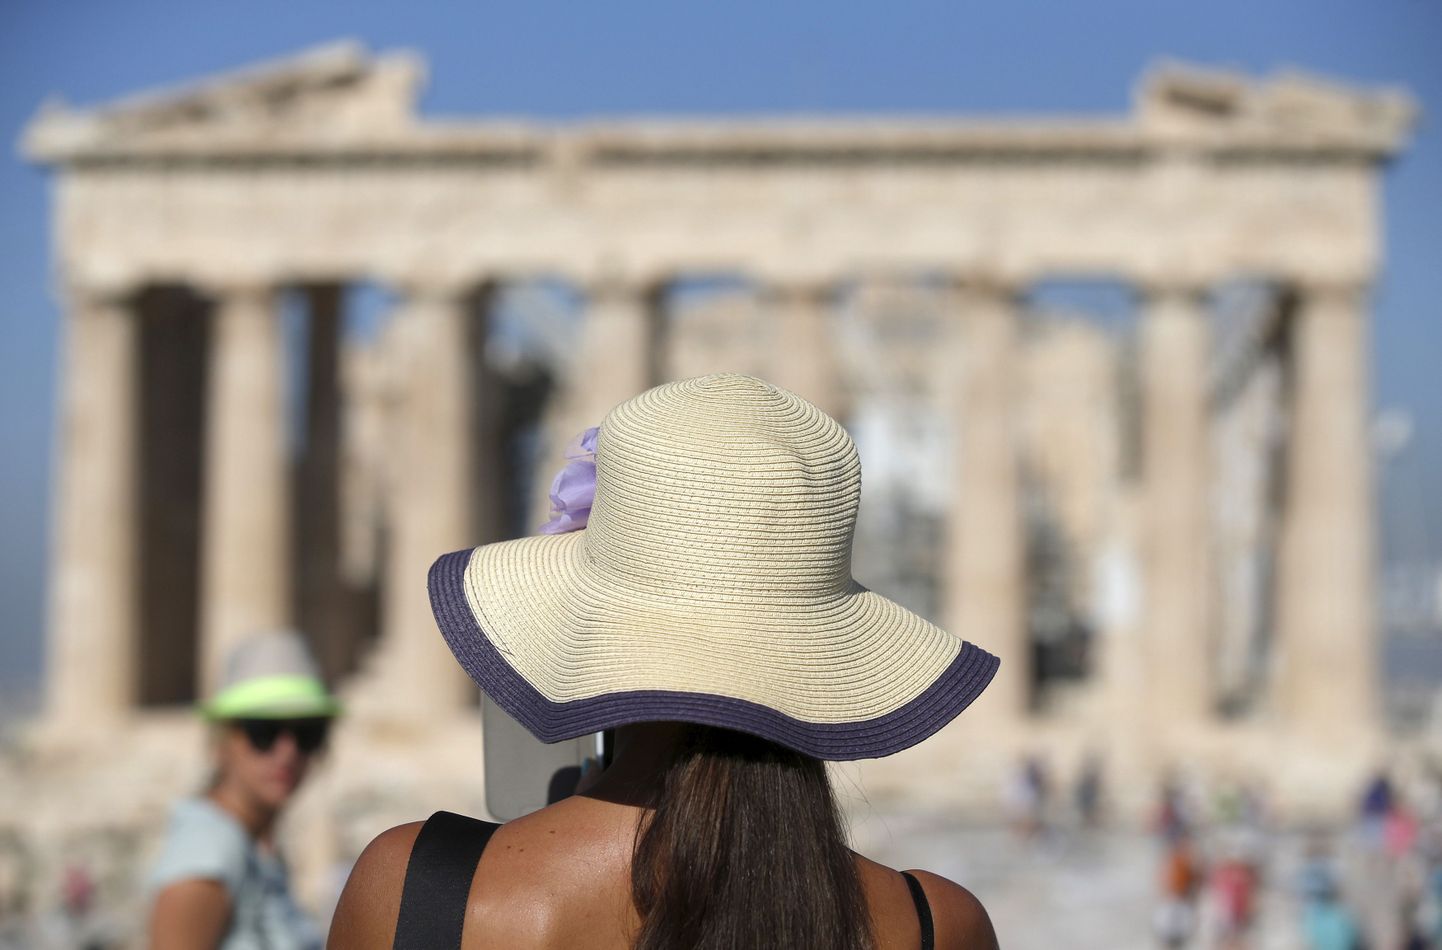 Turist Ateenas